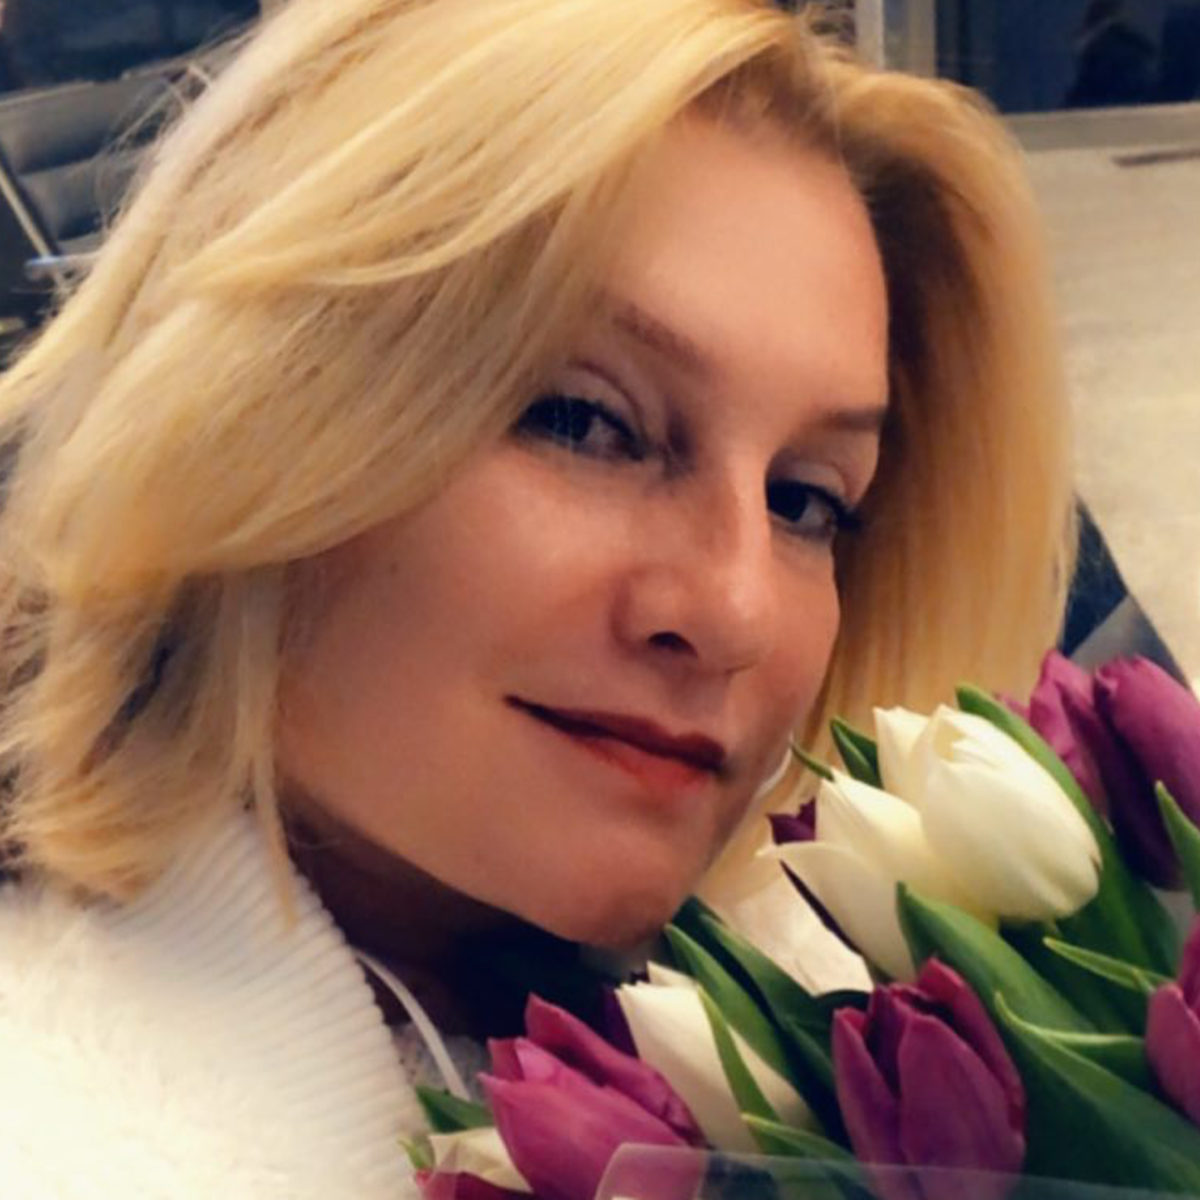 Звезда «6 кадров» Галина Данилова призналась, что еще не встретила «своего  рыцаря» - Первый женский — новости шоу-бизнеса, культура, Life Style